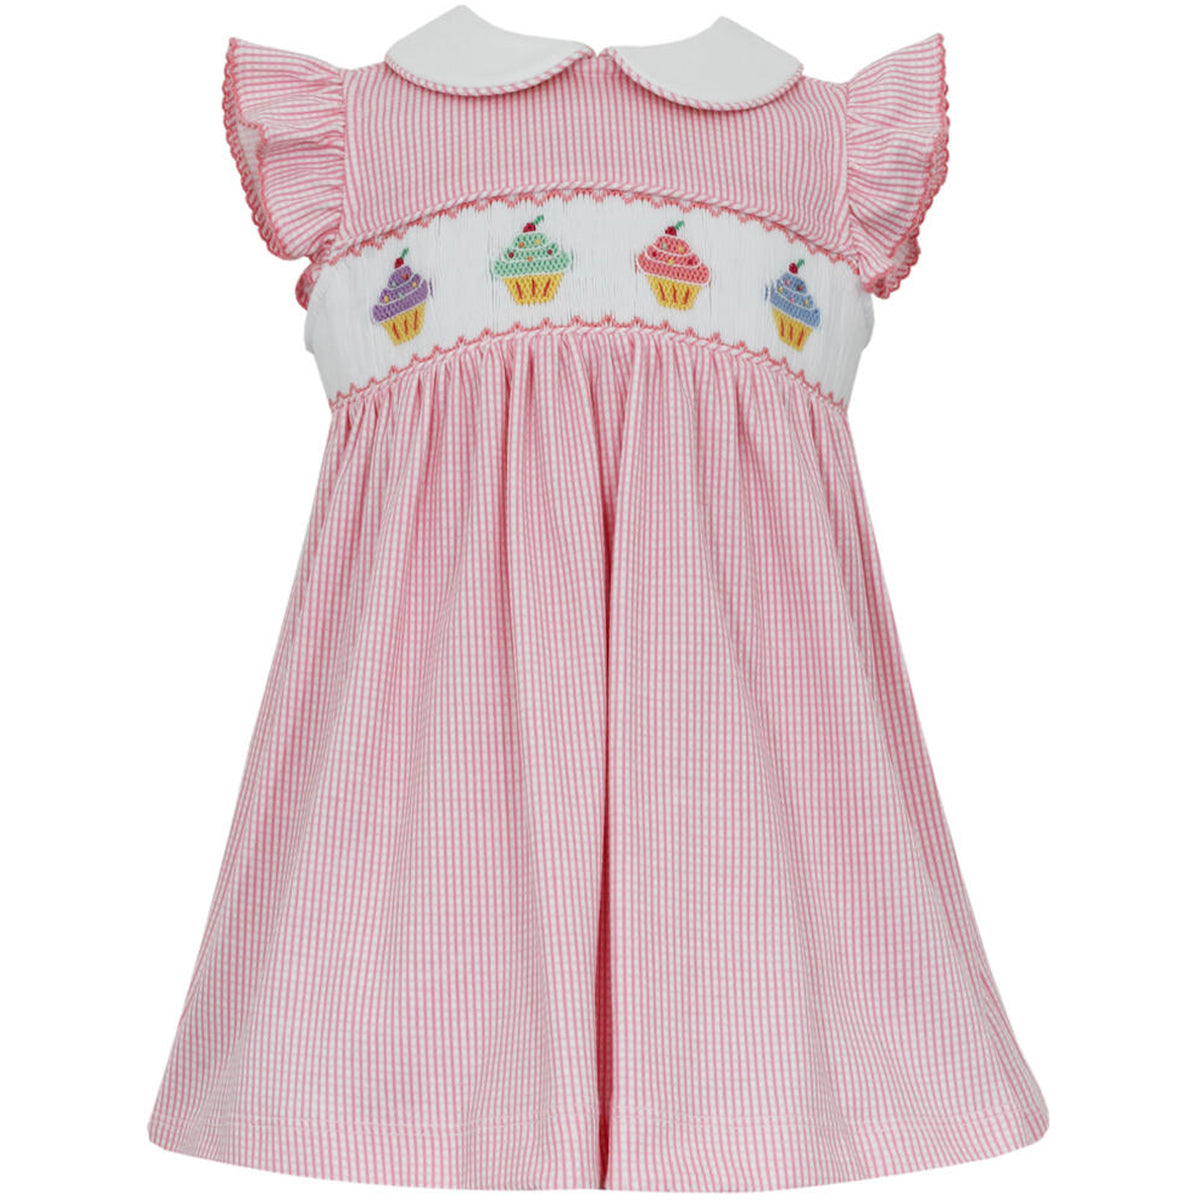 Cupcake Pink Check Knit Flutter Sleeve Dress